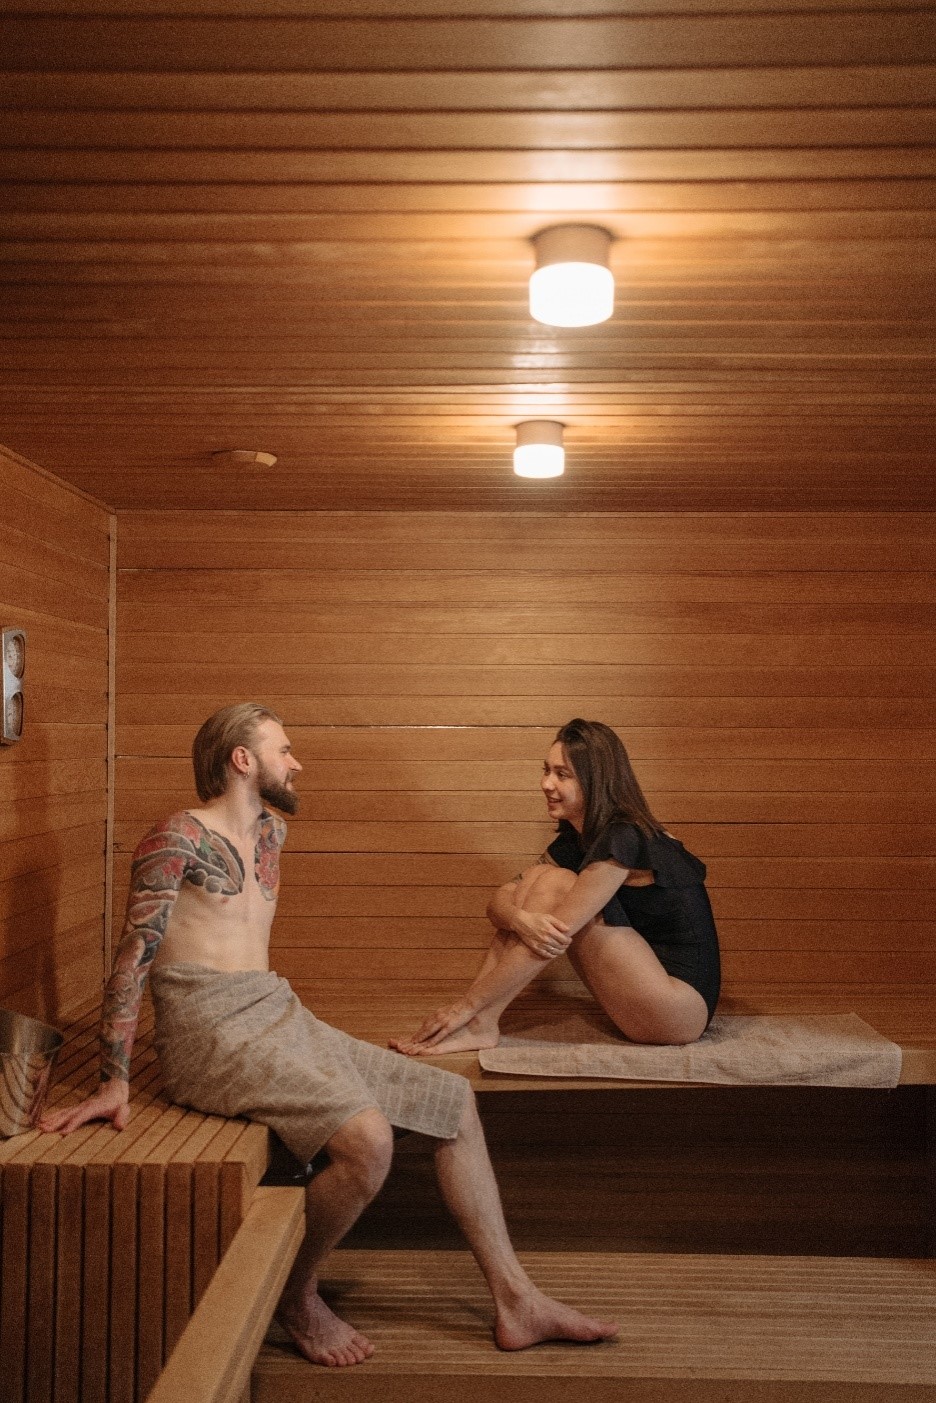 People-in-a-sauna